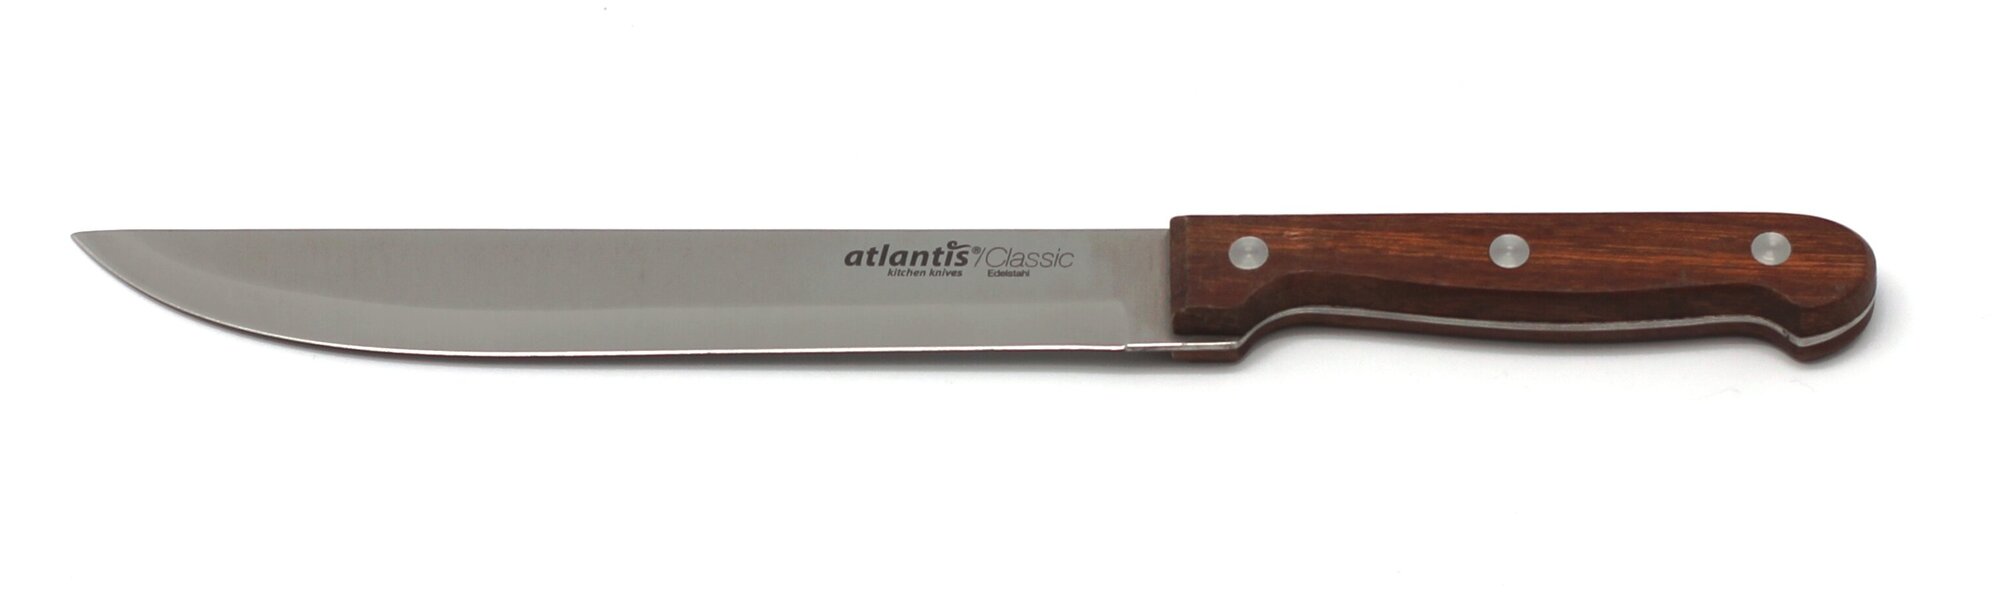 Нож Atlantis - фото №1